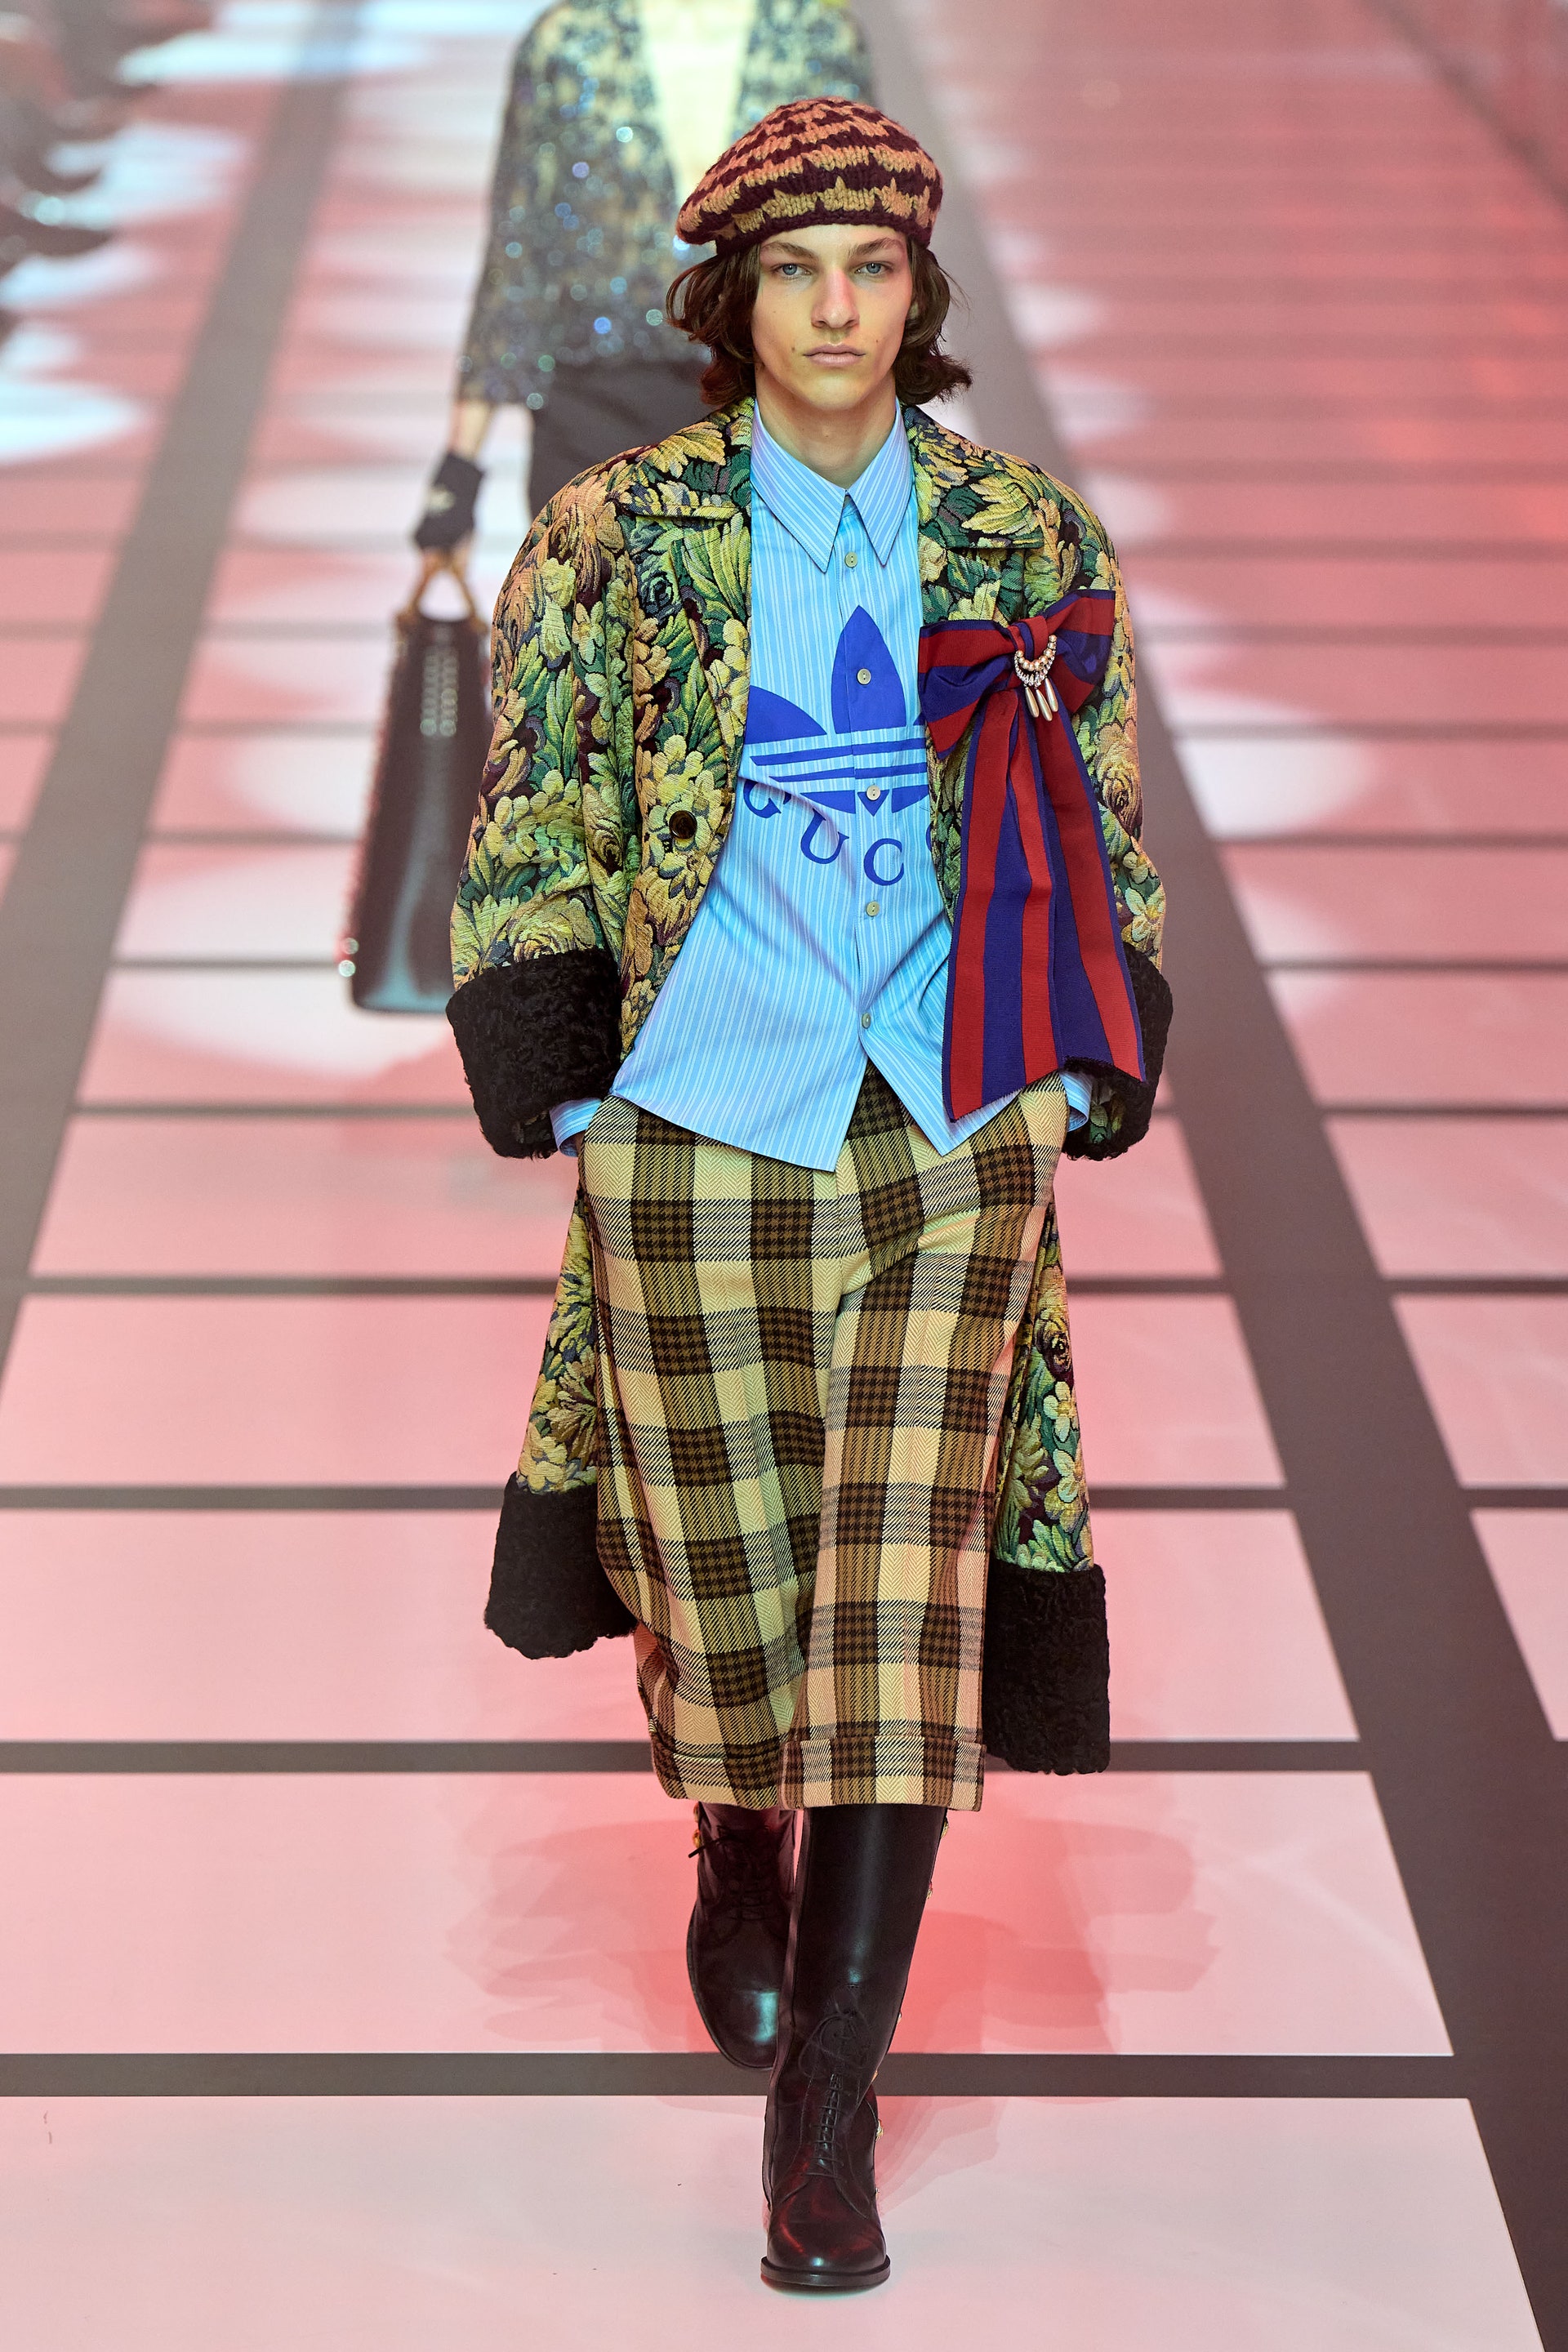 Giới mộ điệu rung chuyển với màn collab của Gucci x Adidas tại Milan Fashion Week 2022 - Ảnh 12